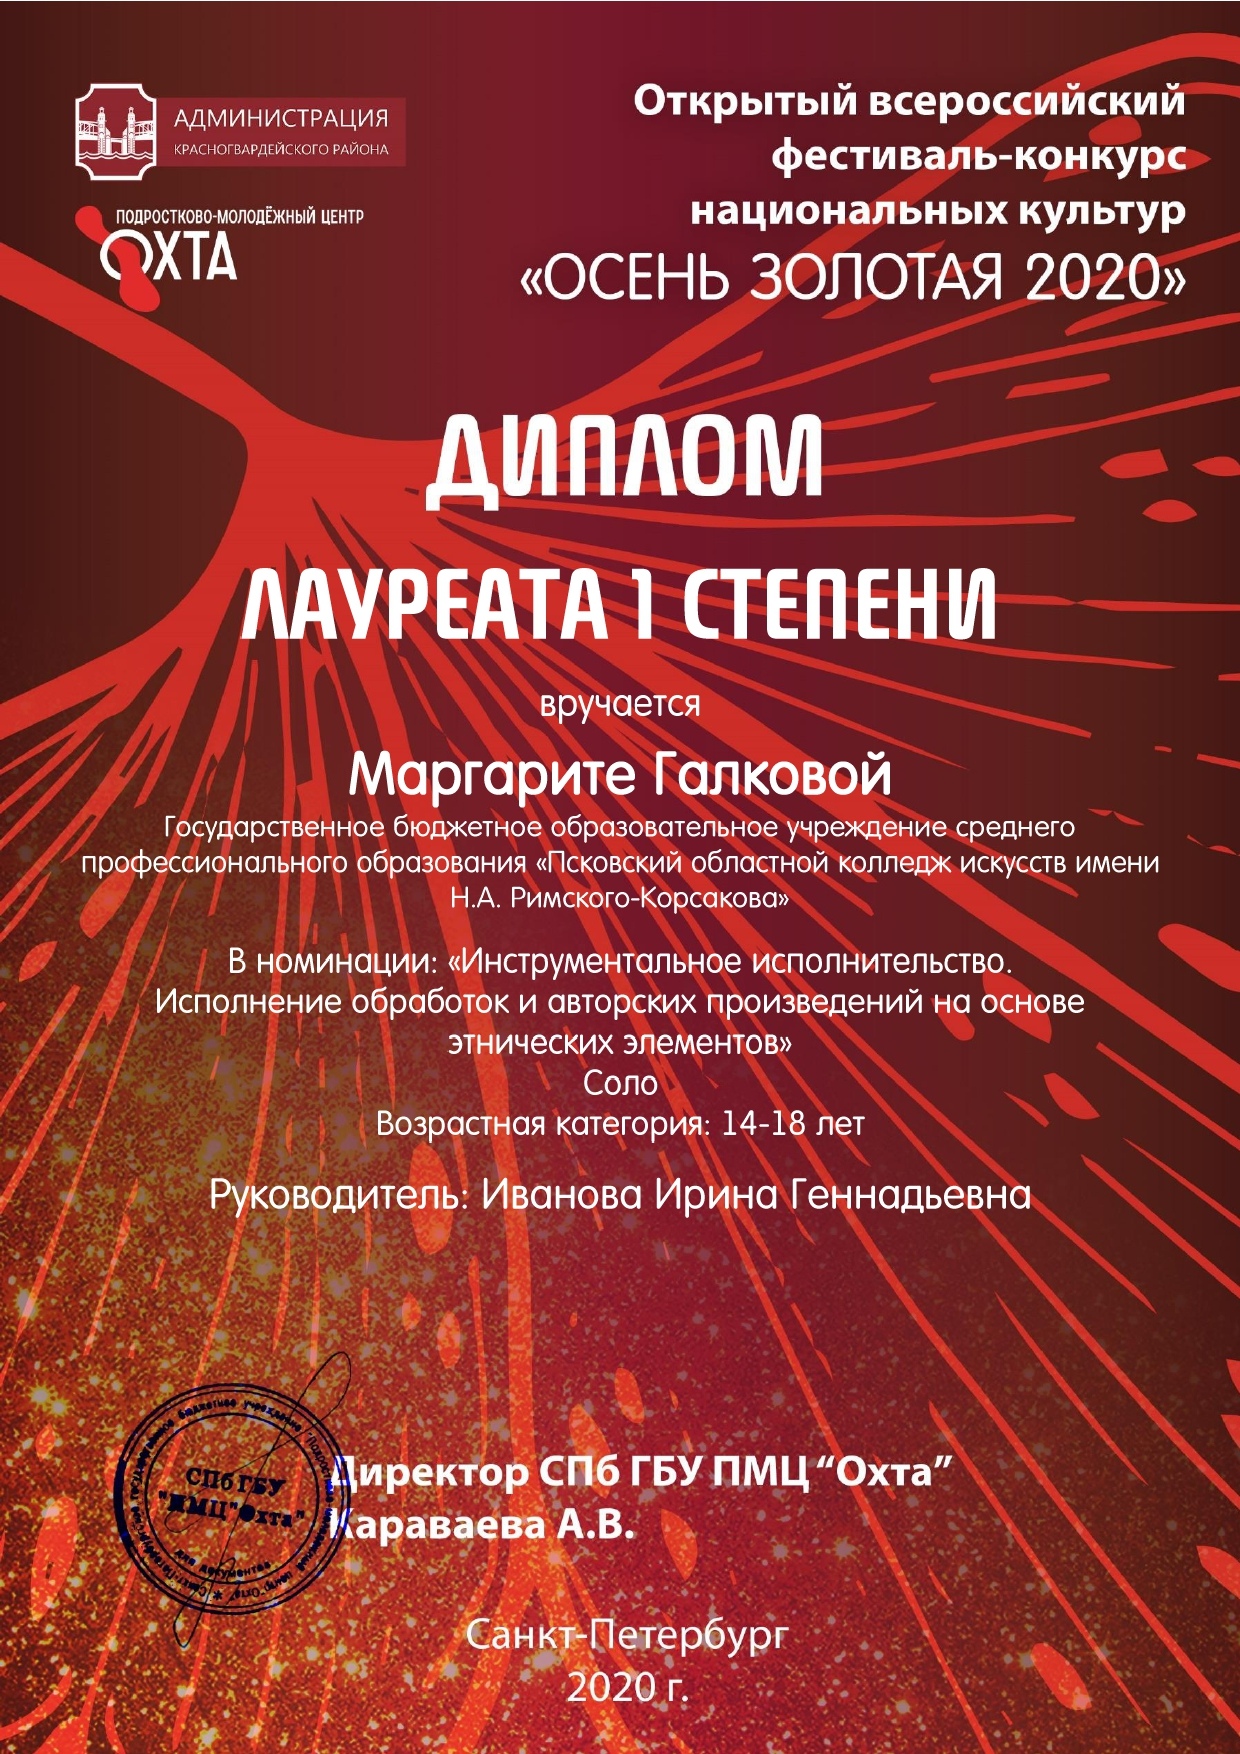 studenty-kolledzha-iskusstv-stali-laureatami-festivalya-konkursa-osen-zolotaya-2020